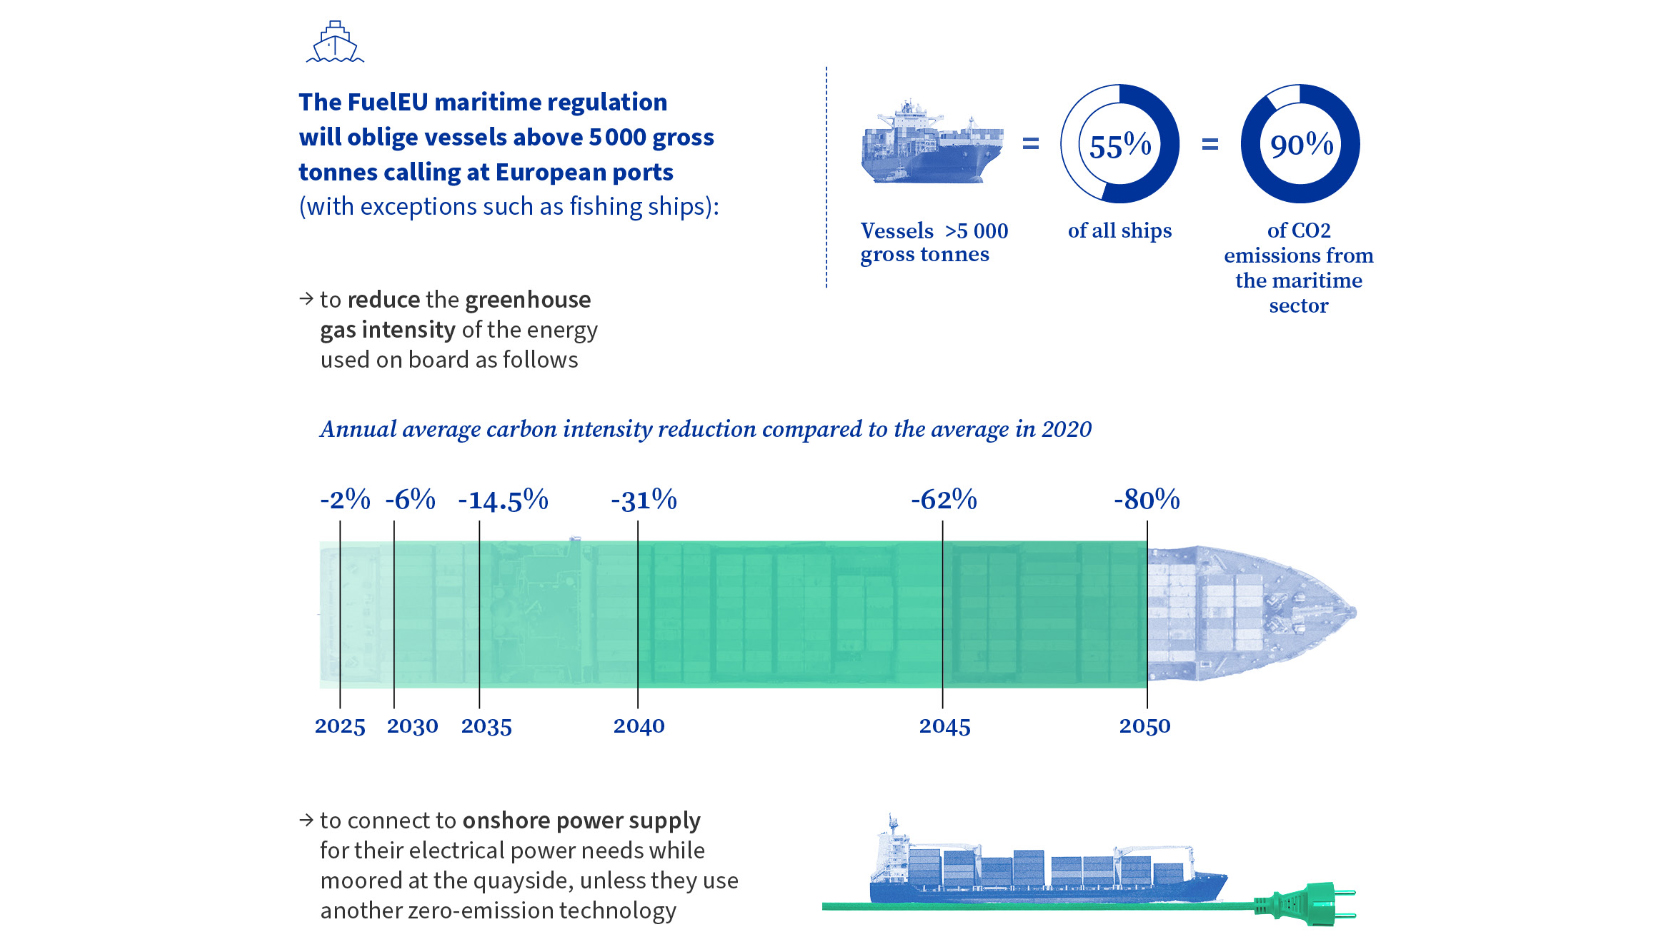 EU-lidstaten gaan akkoord met de FuelEU Maritime-verordening